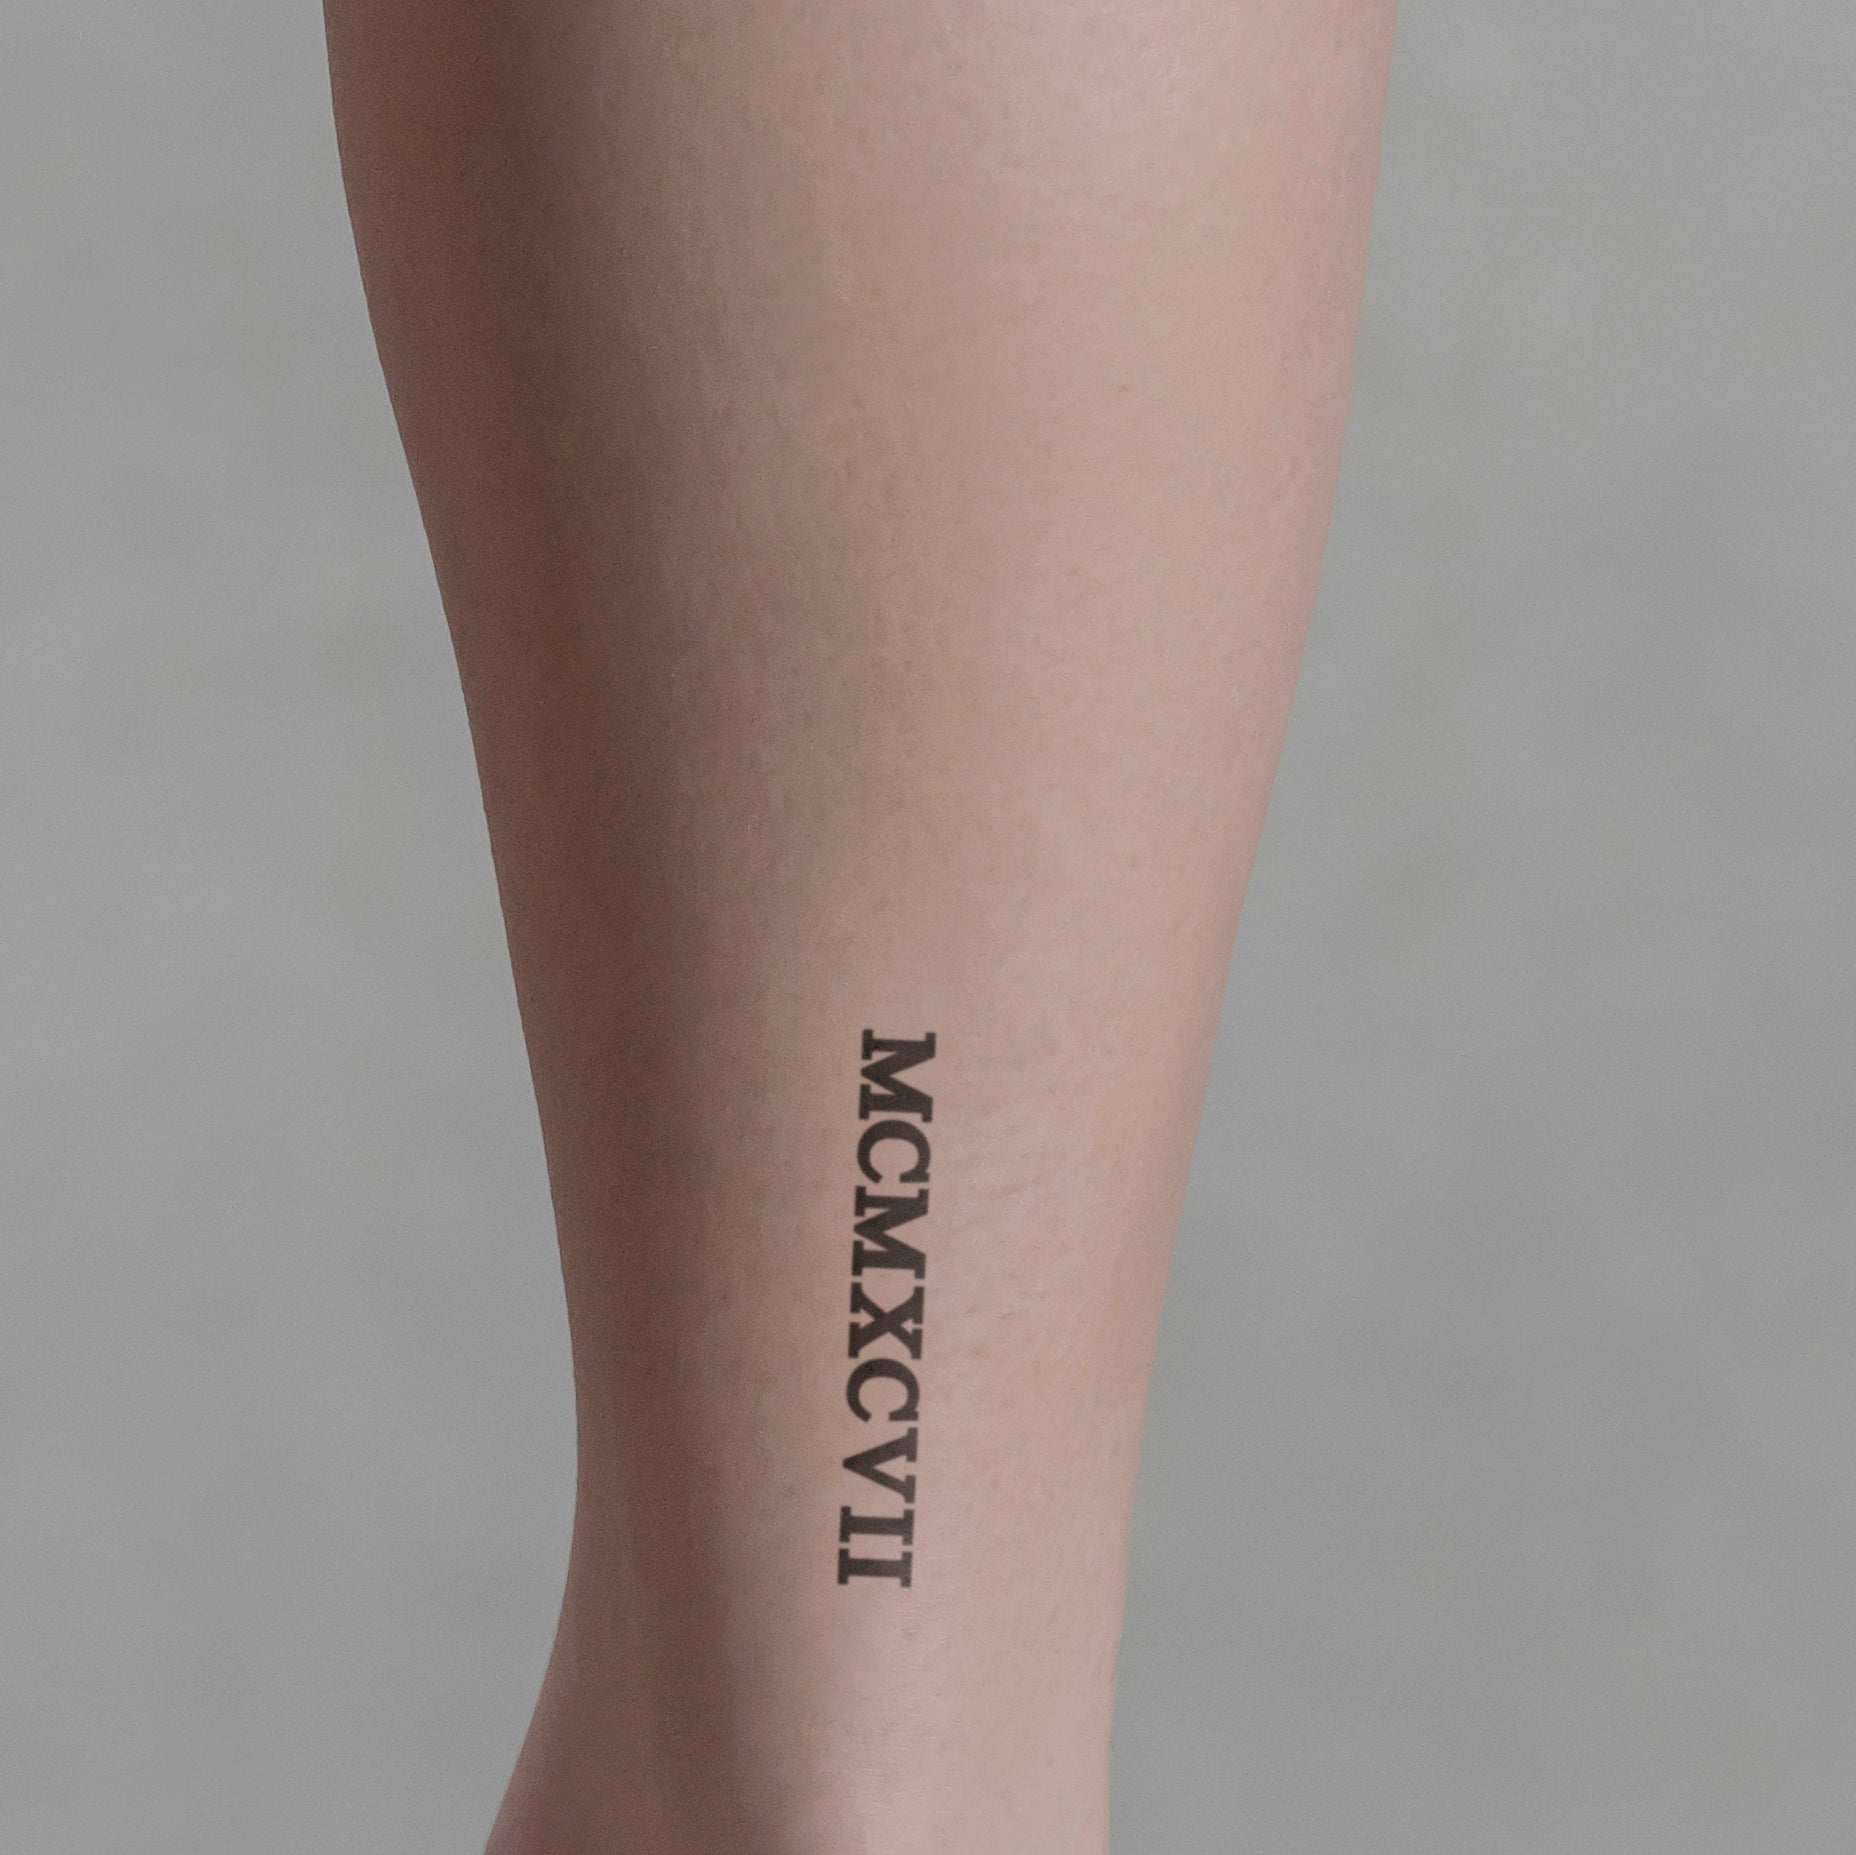 Zahlen Tattoo Römische Zahl MCMXCVII (1997) von minink, der Marke für temporäre Tattoos.